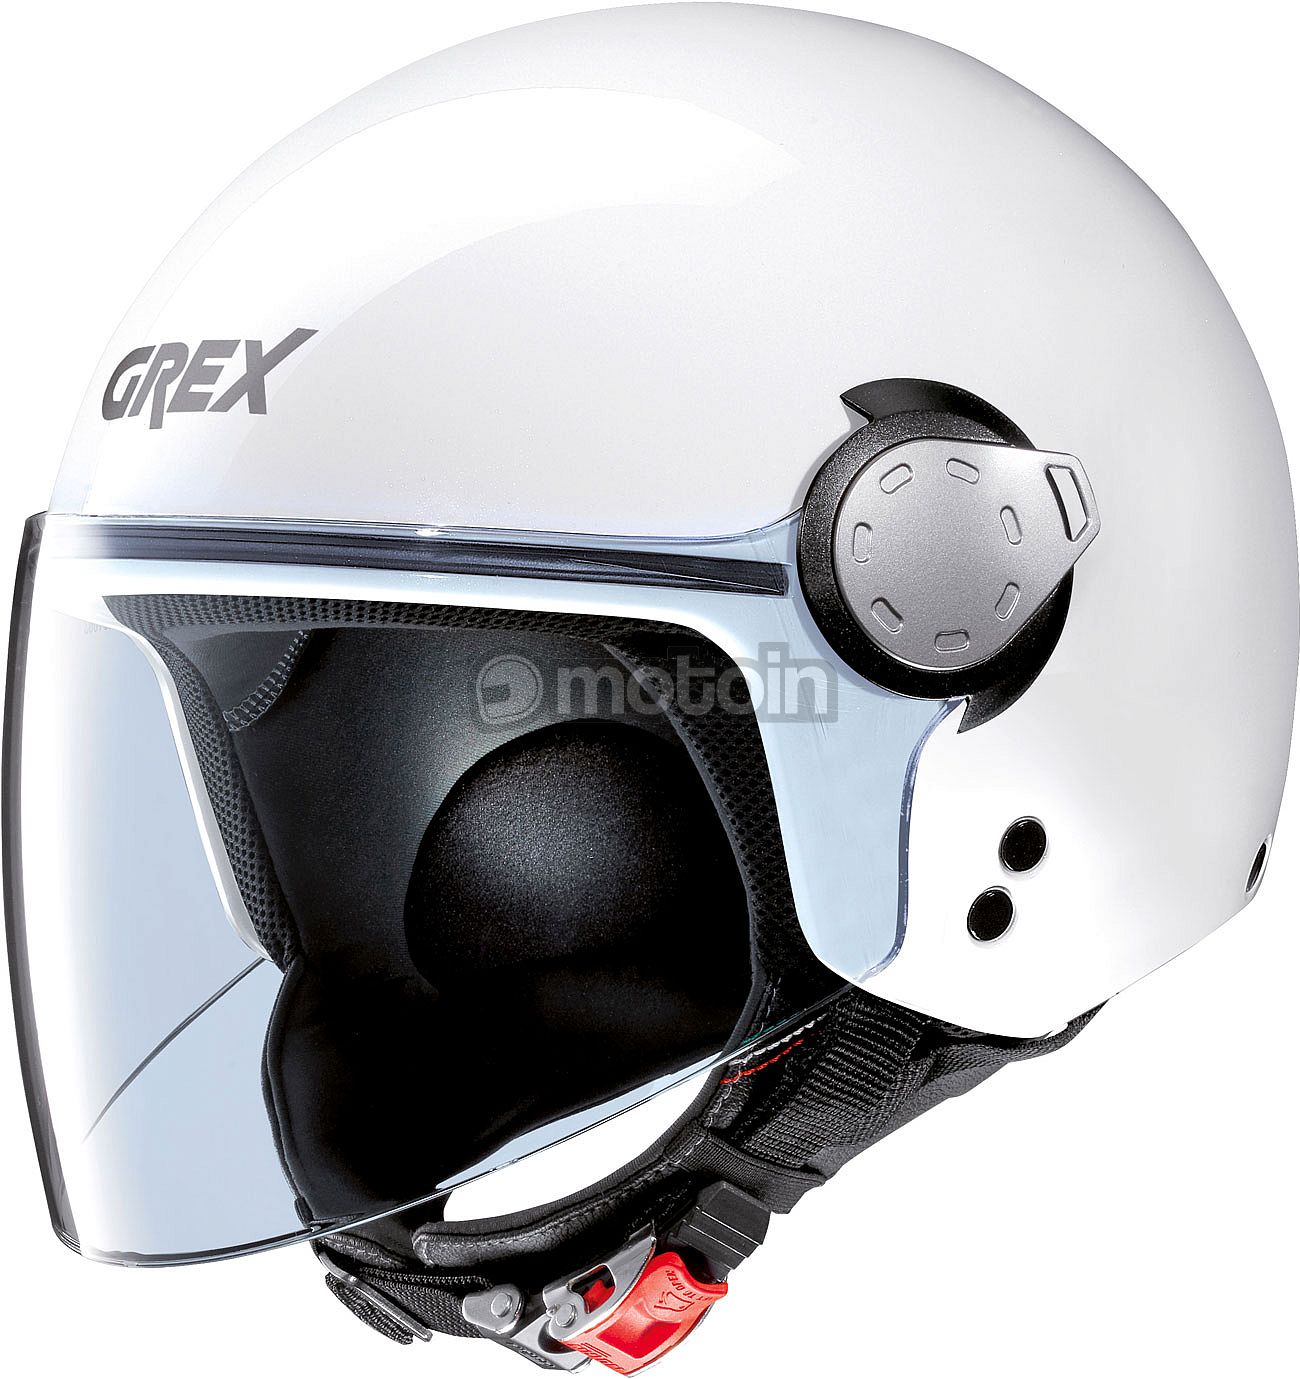 Grex G3.1 E jet hjelm motoin.de